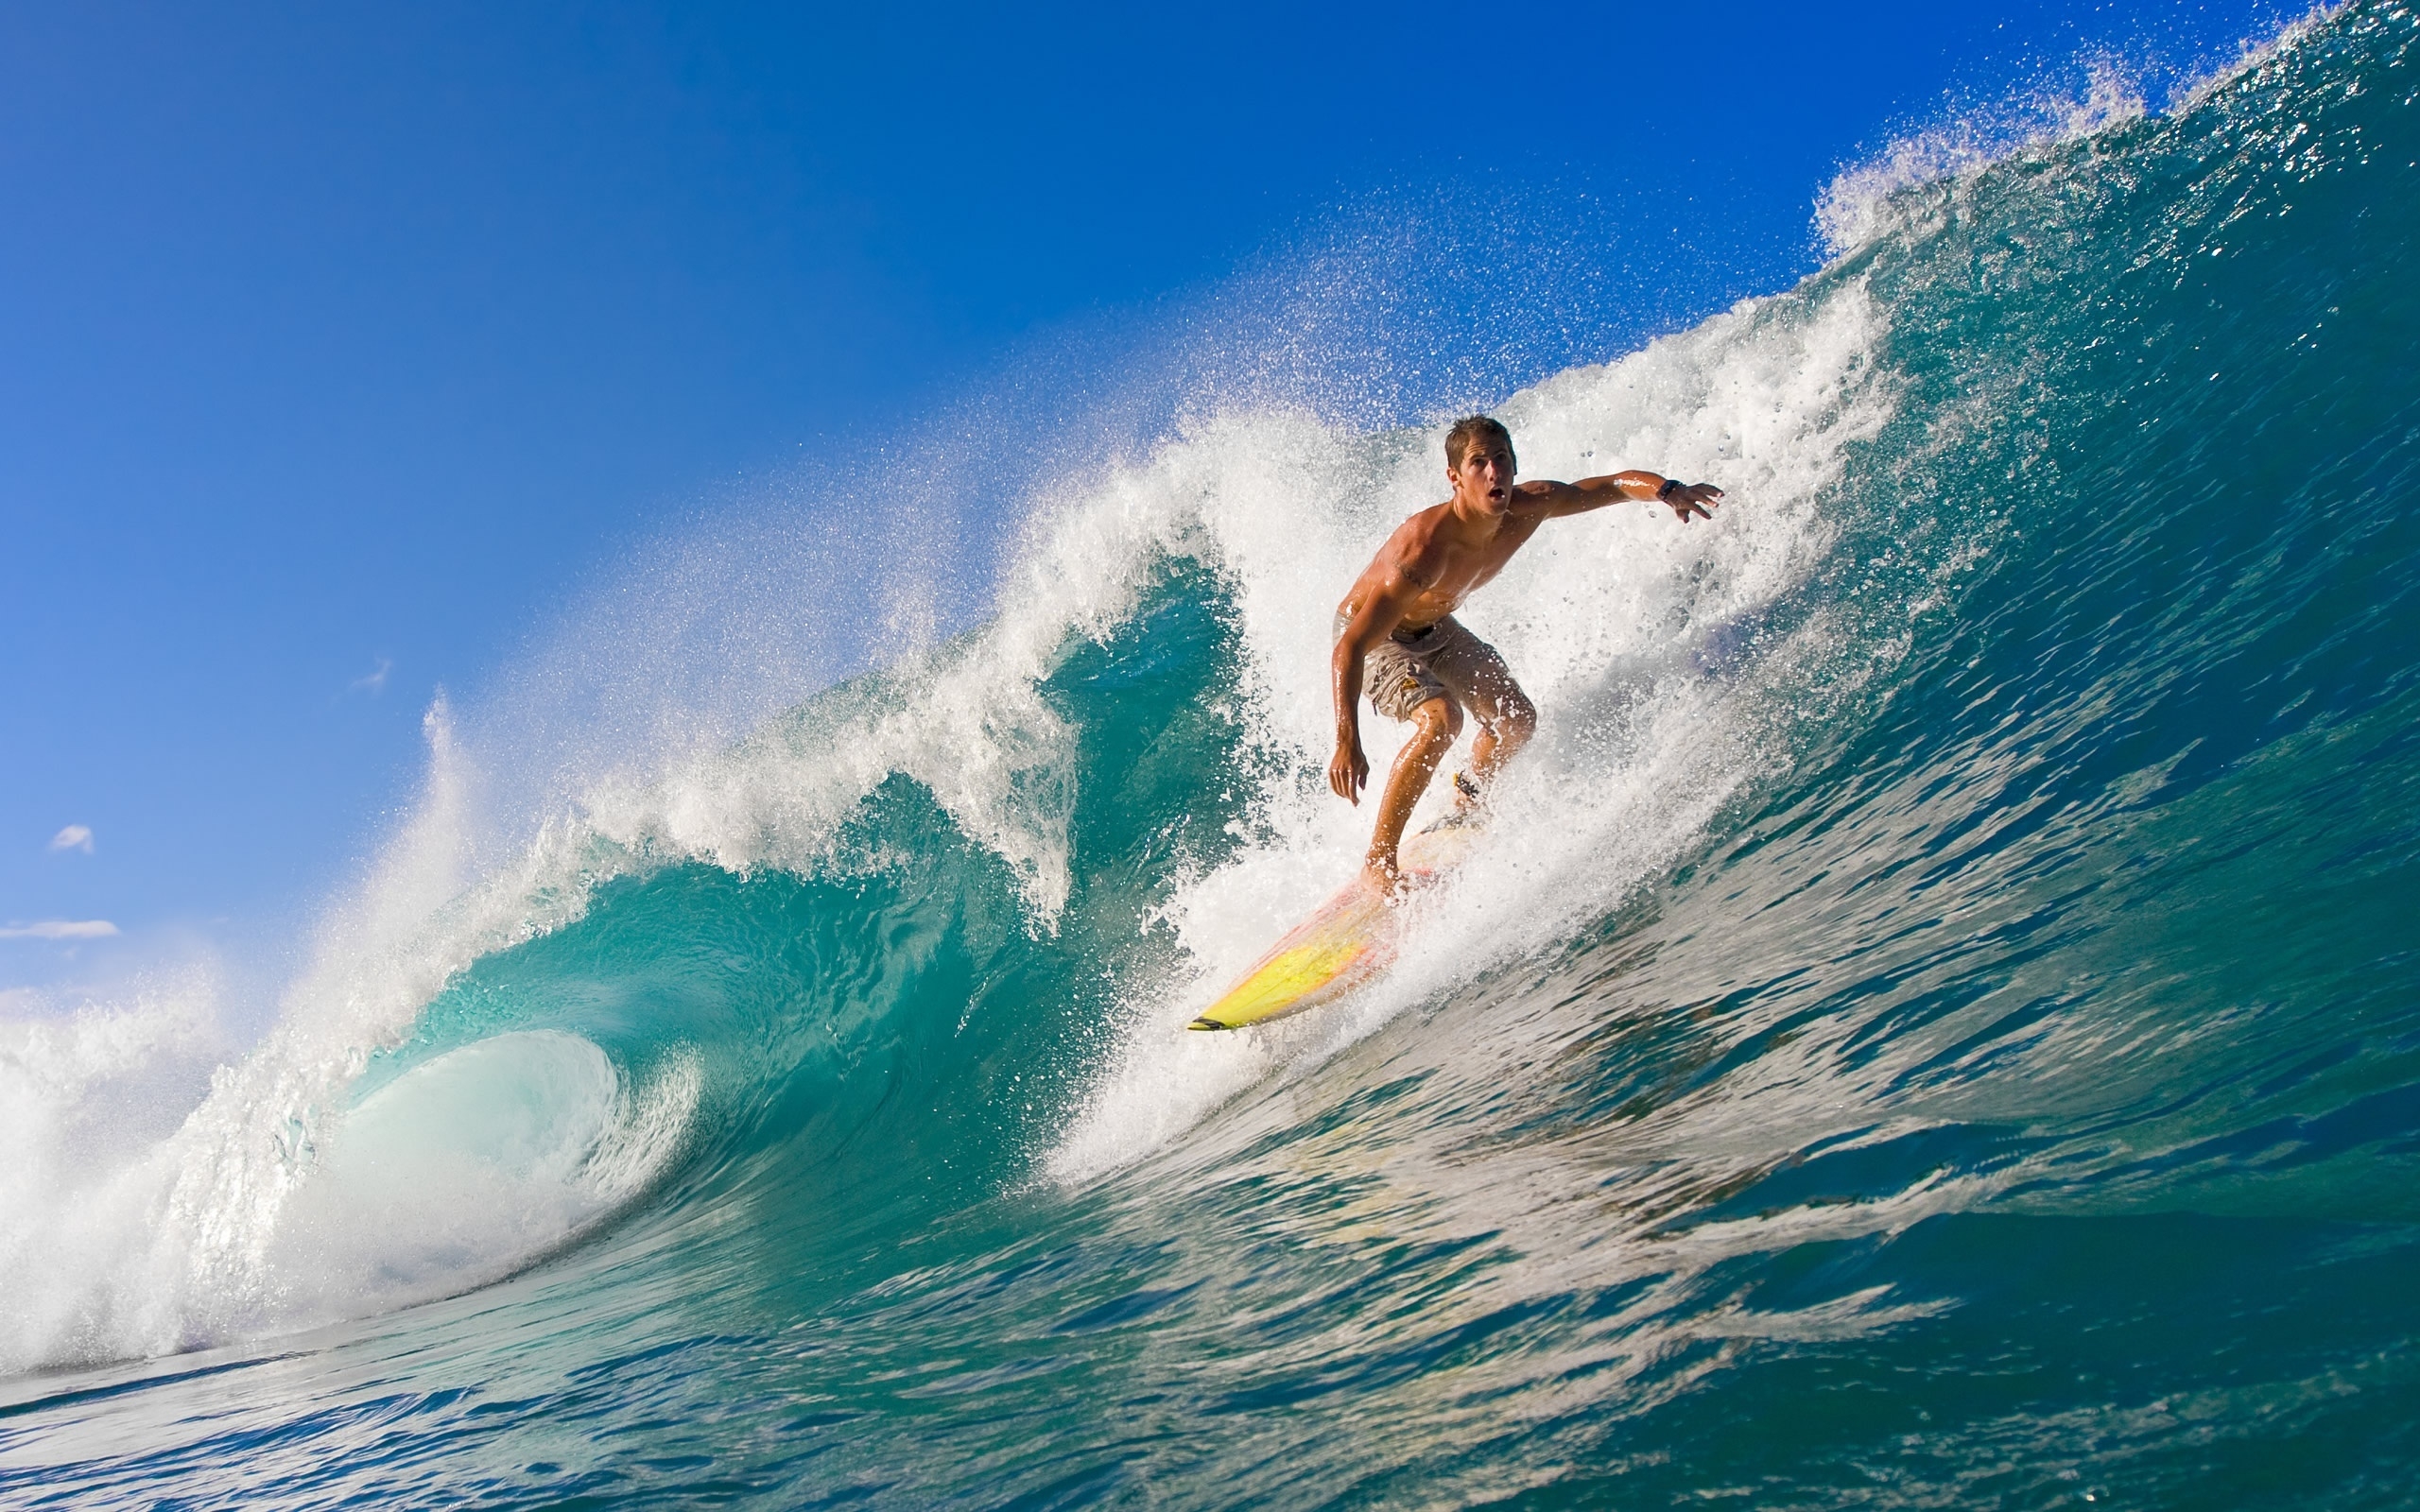 surfing wallpaper hd widescreen